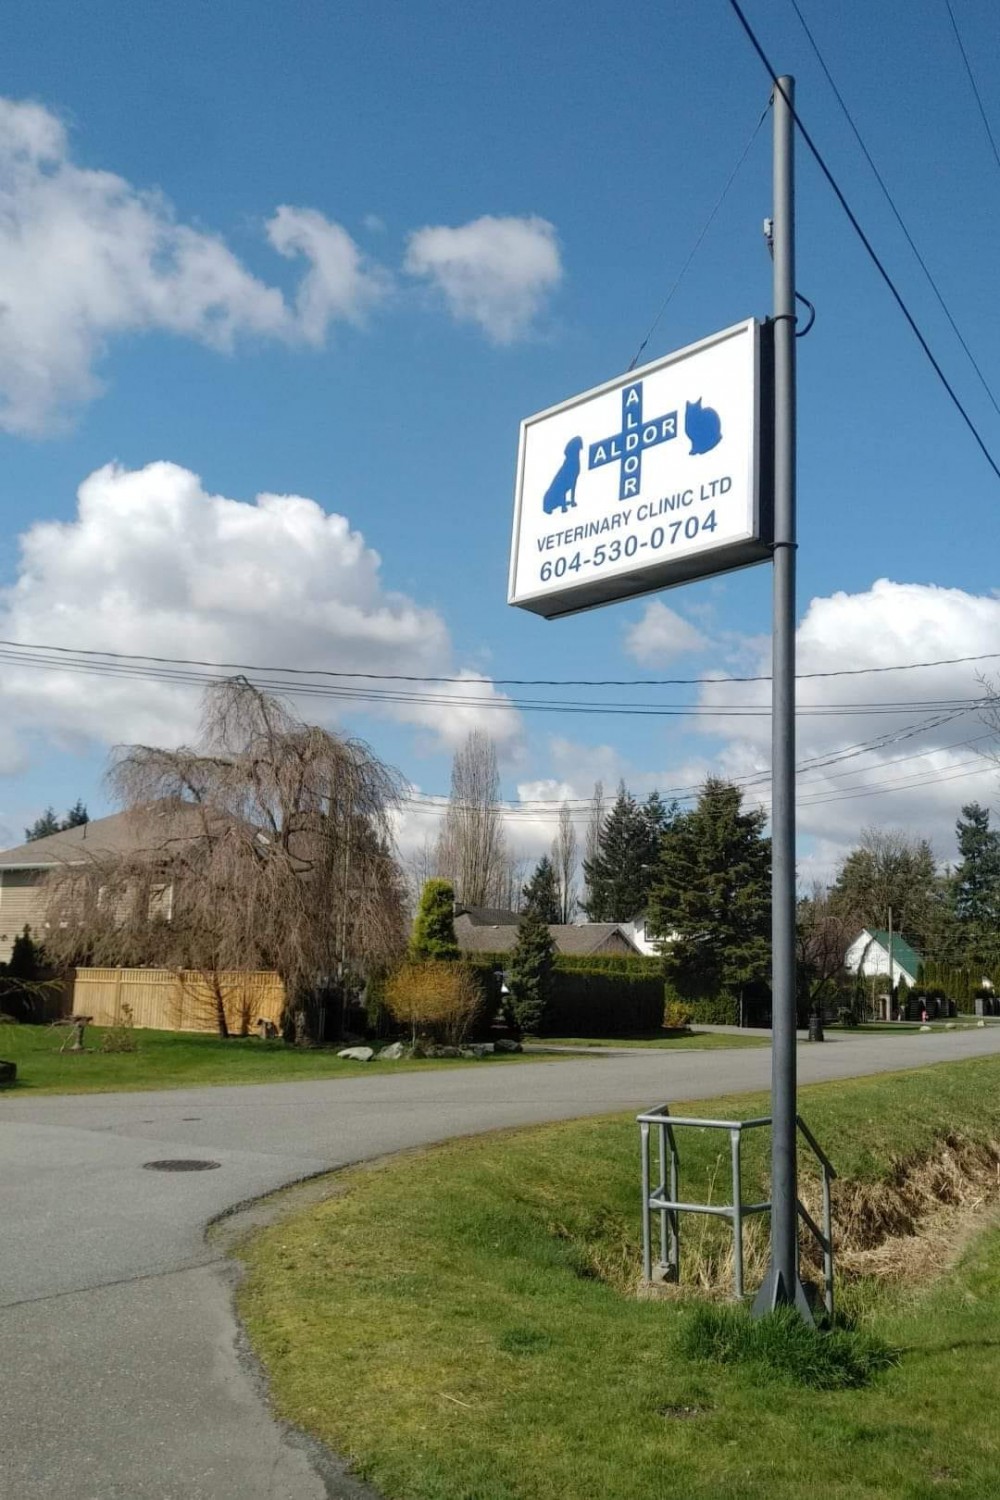 Aldor Veterinary Clinic in Milner, BC